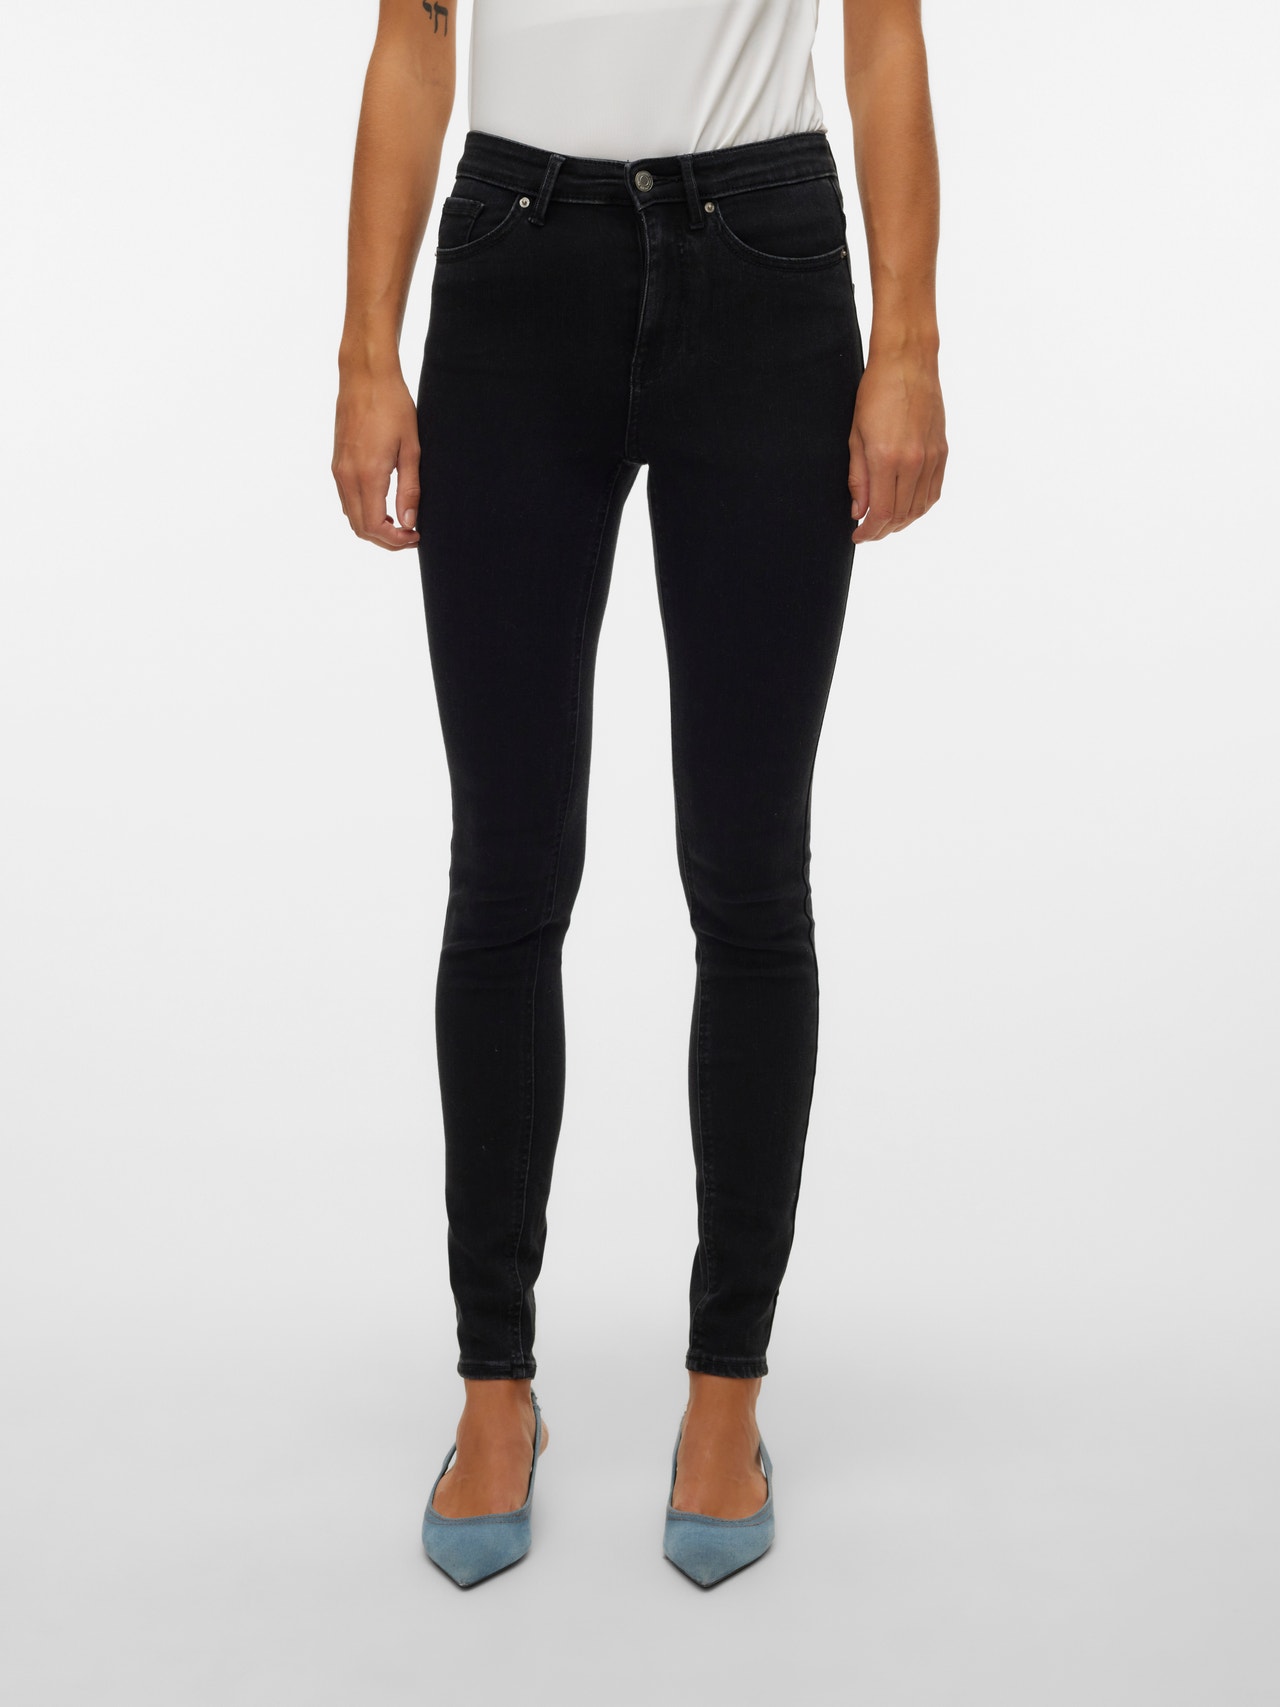 Vero Moda VMSOPHIA Skinny fit Jeans -Black Denim - 10315577